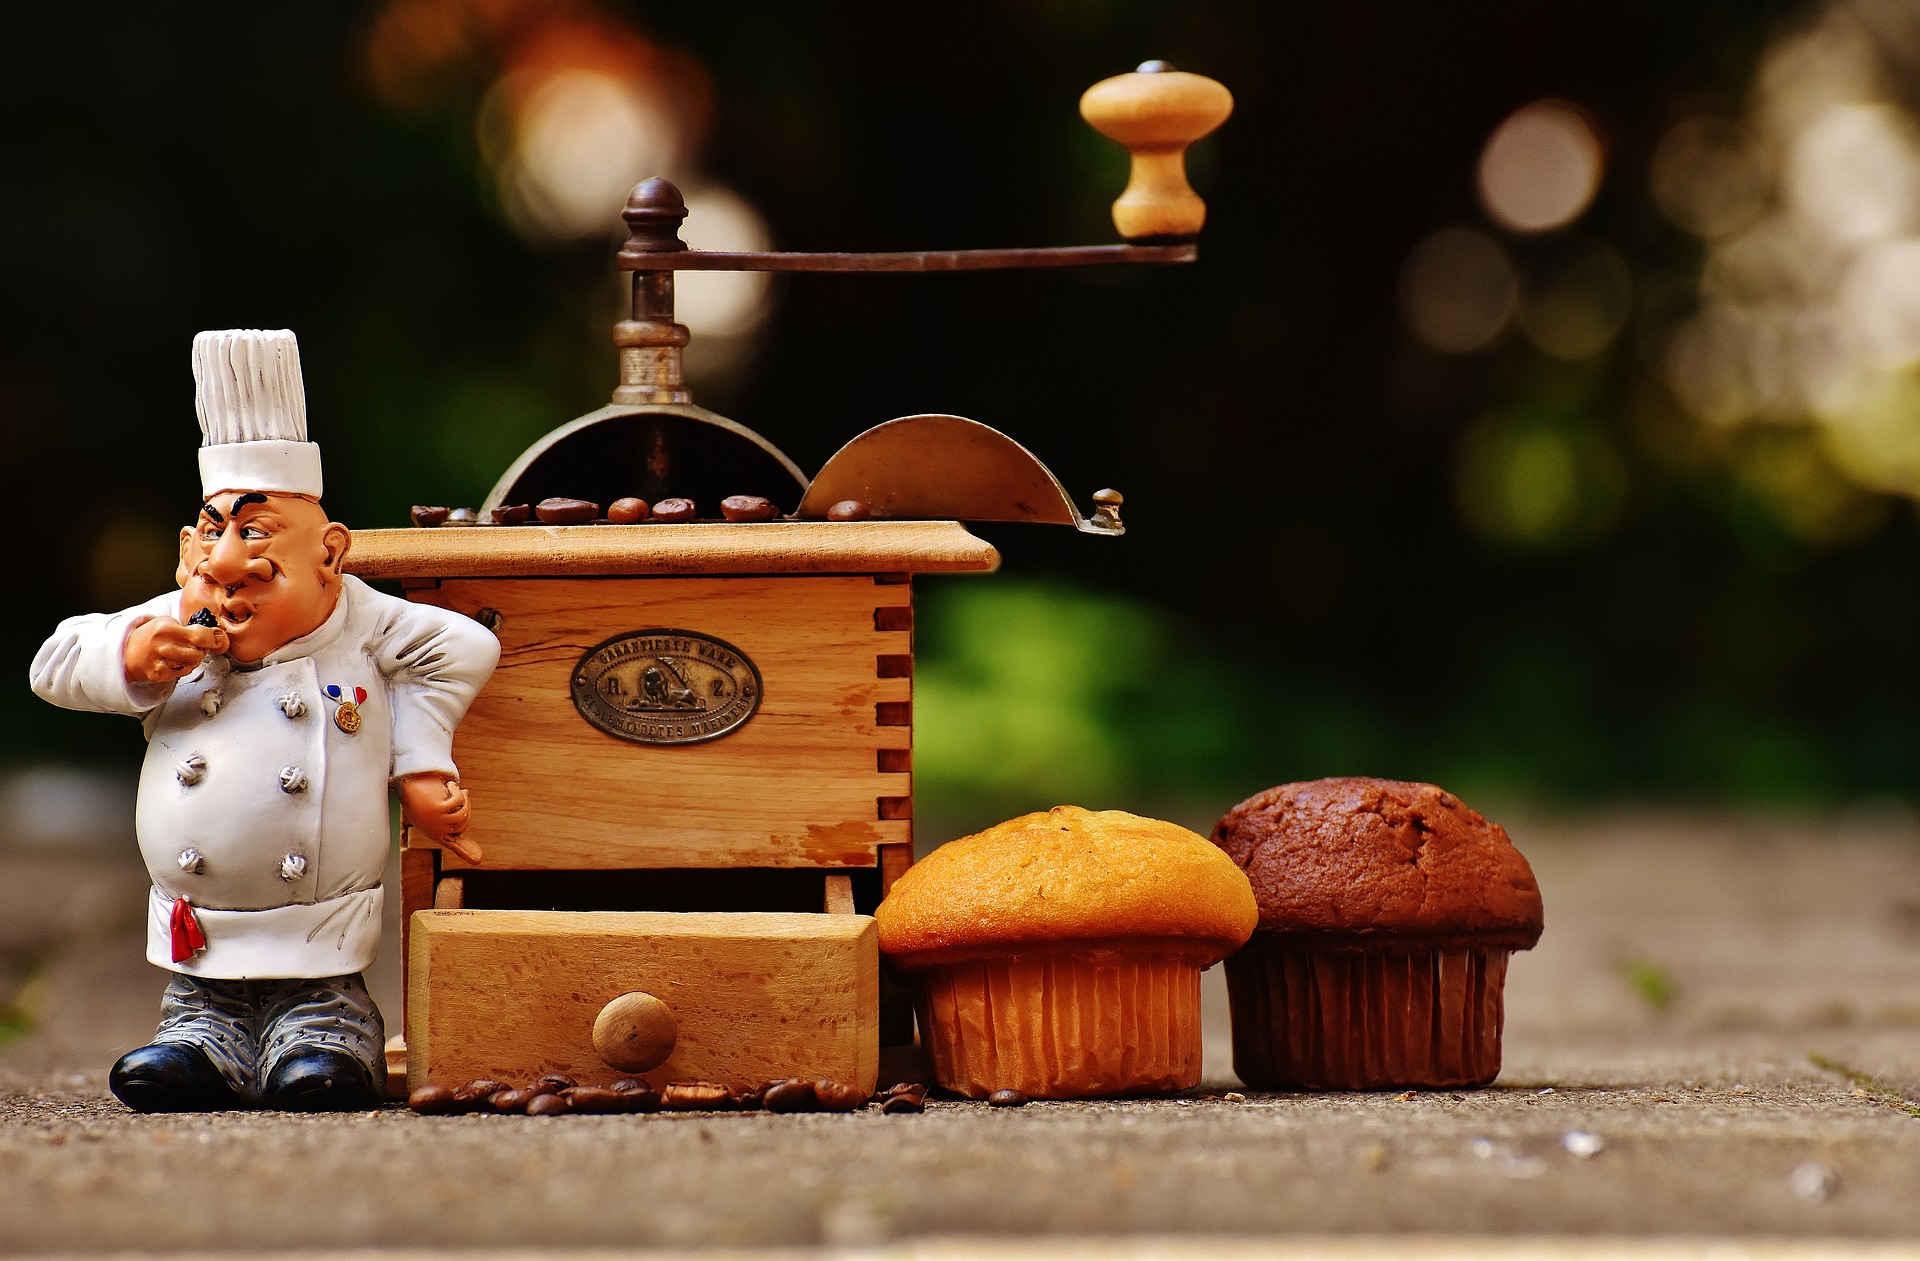 Cada vez más los pasteleros promocionan su negocio en digital